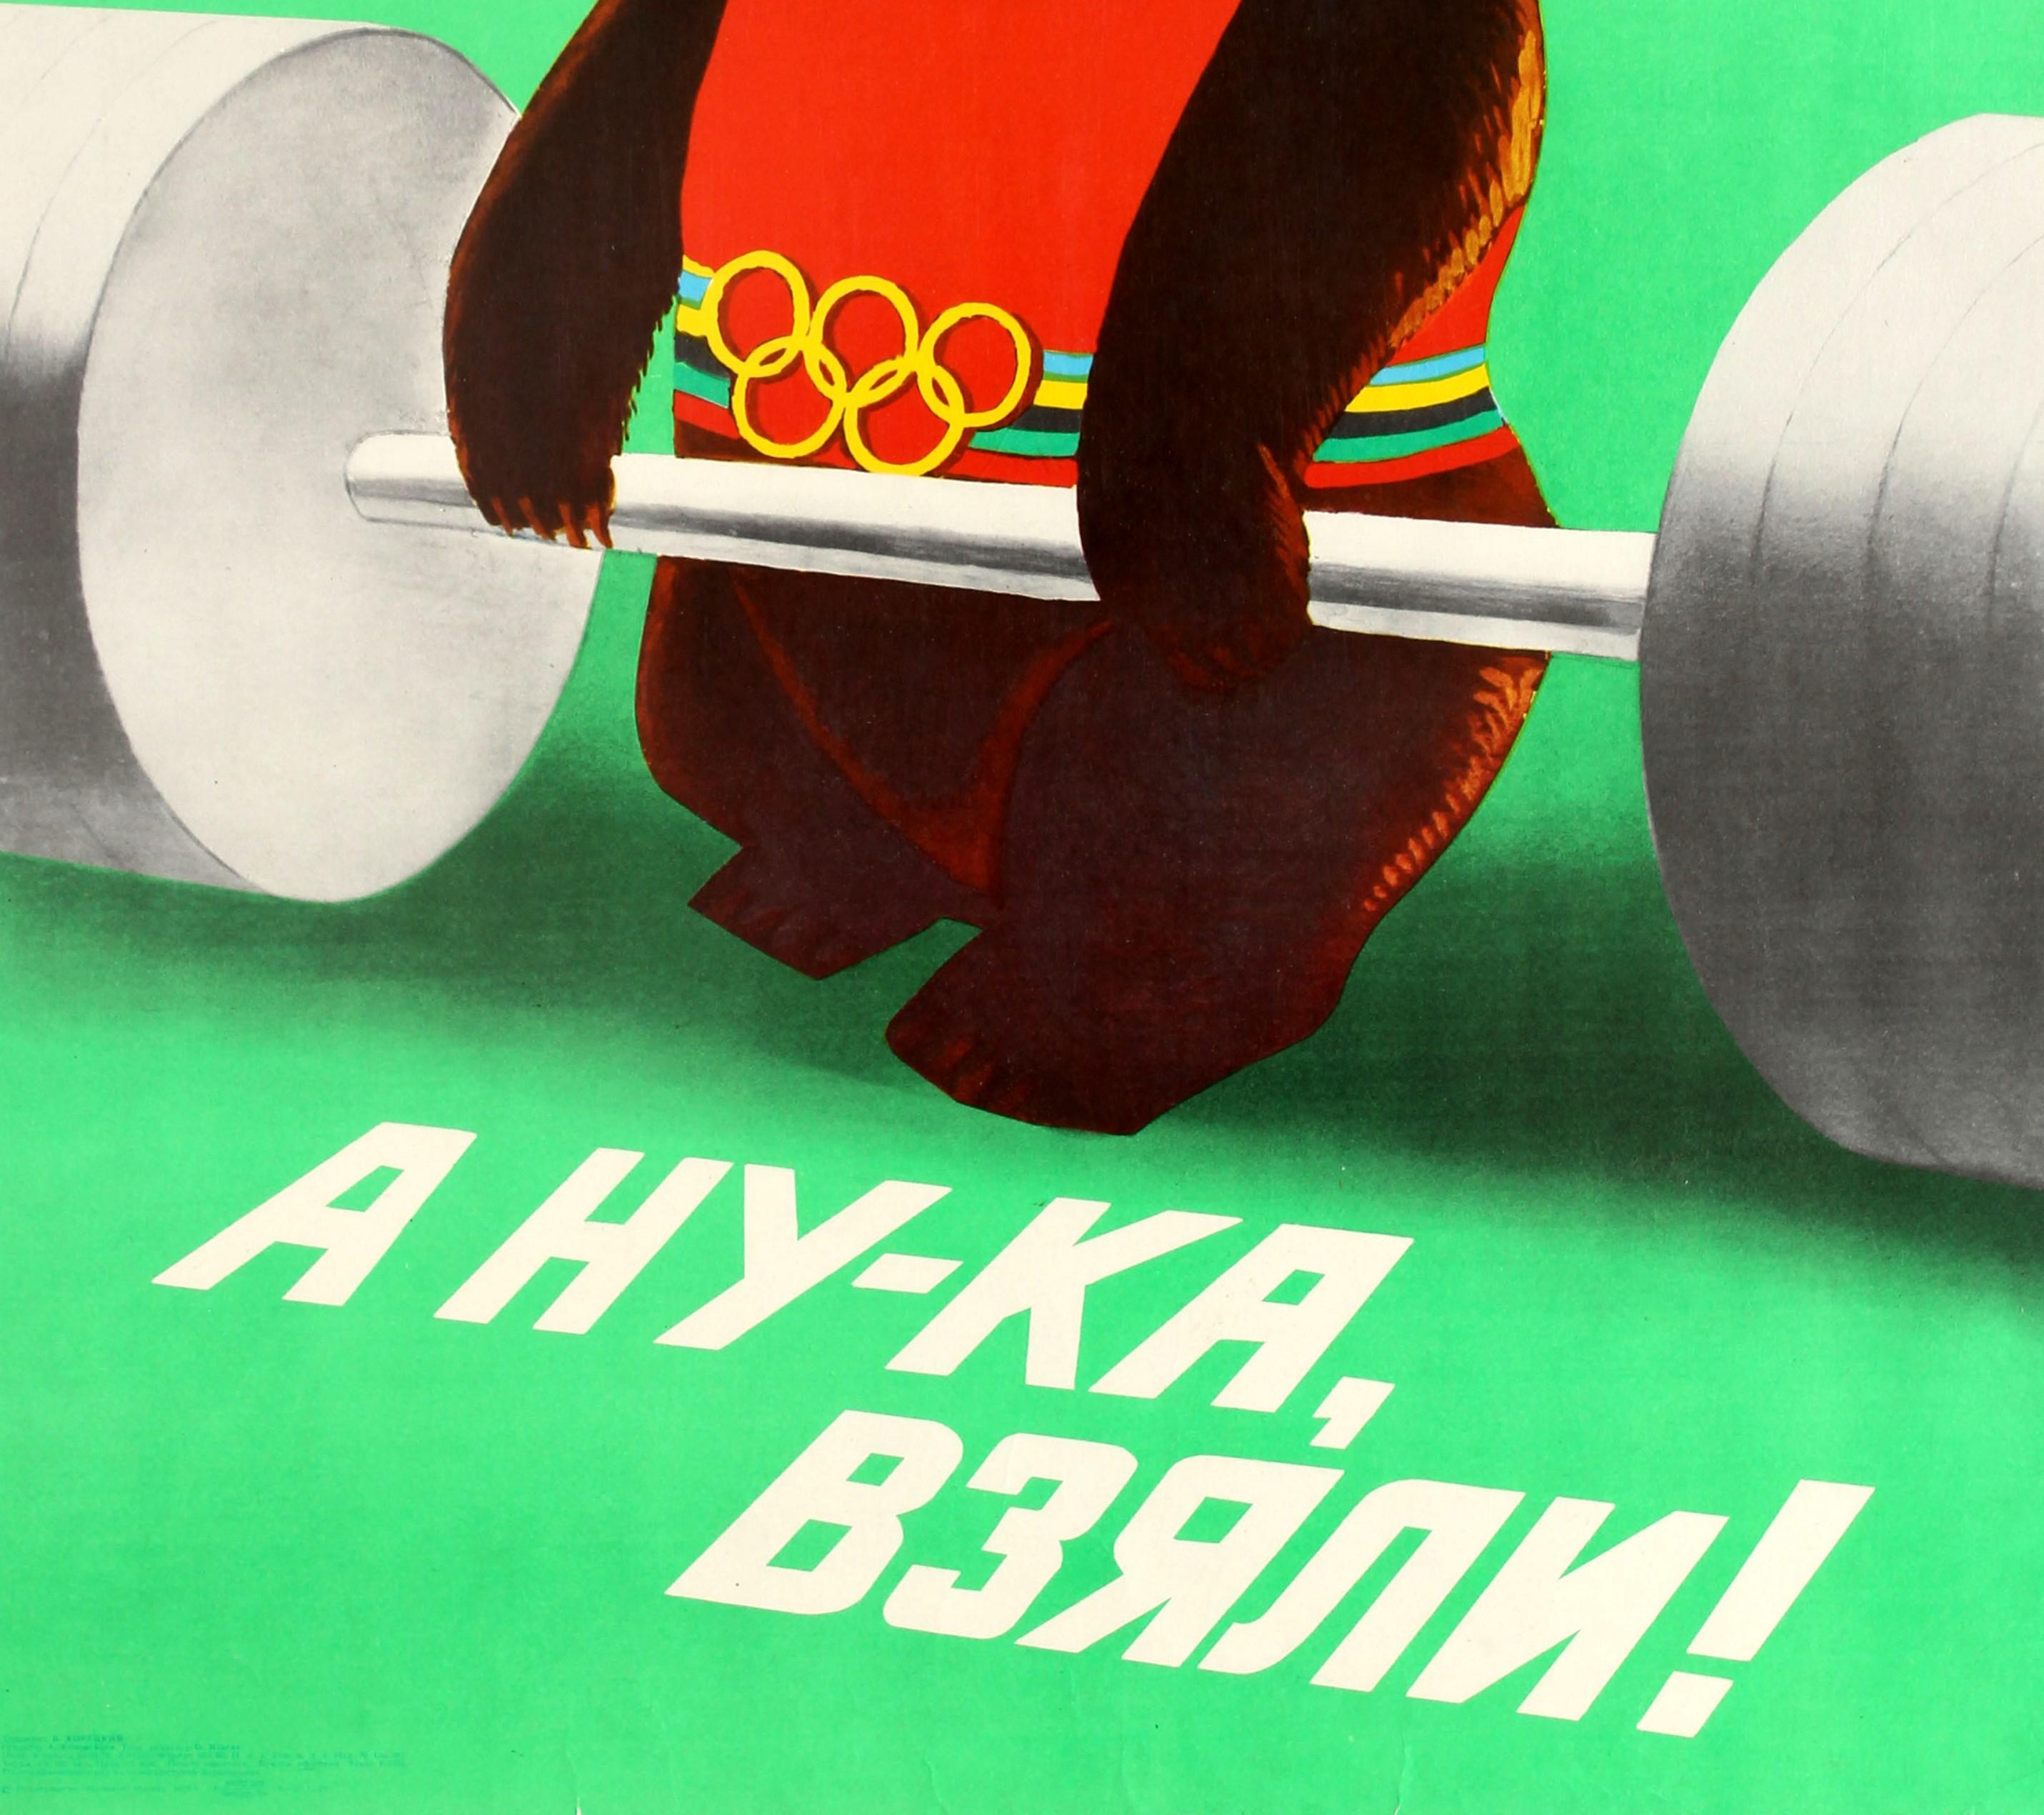 1980 olympic mascot